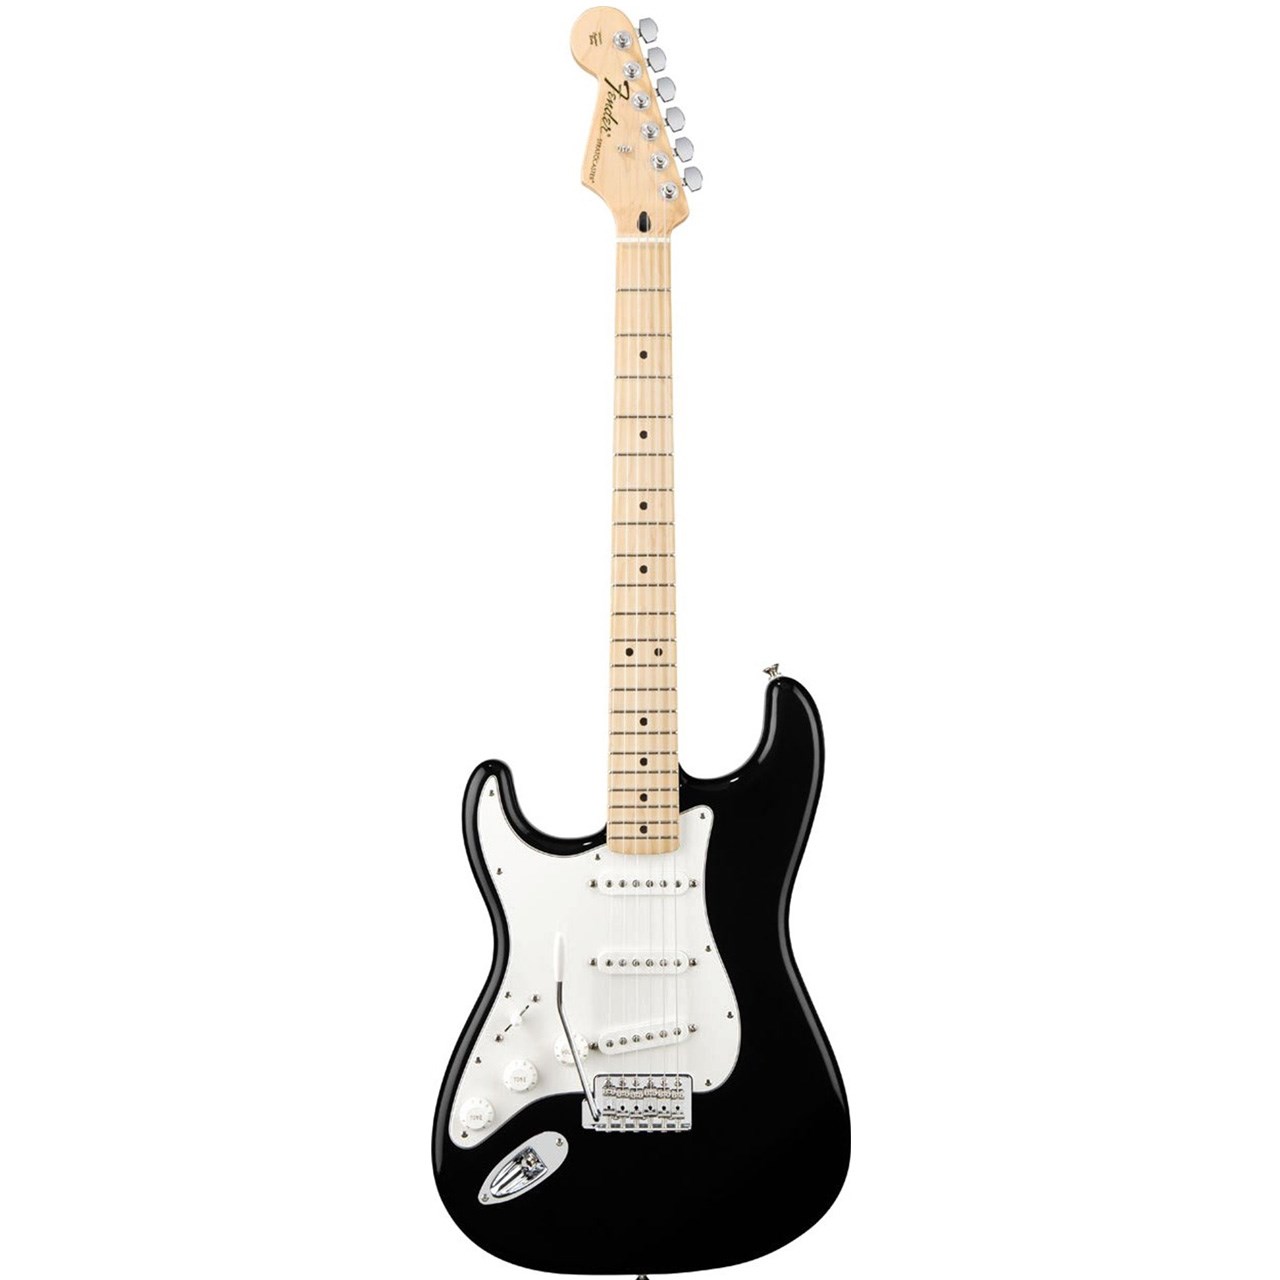 گیتار الکتریک چپ دست فندر مدل Standard Strarocaster 0144622506